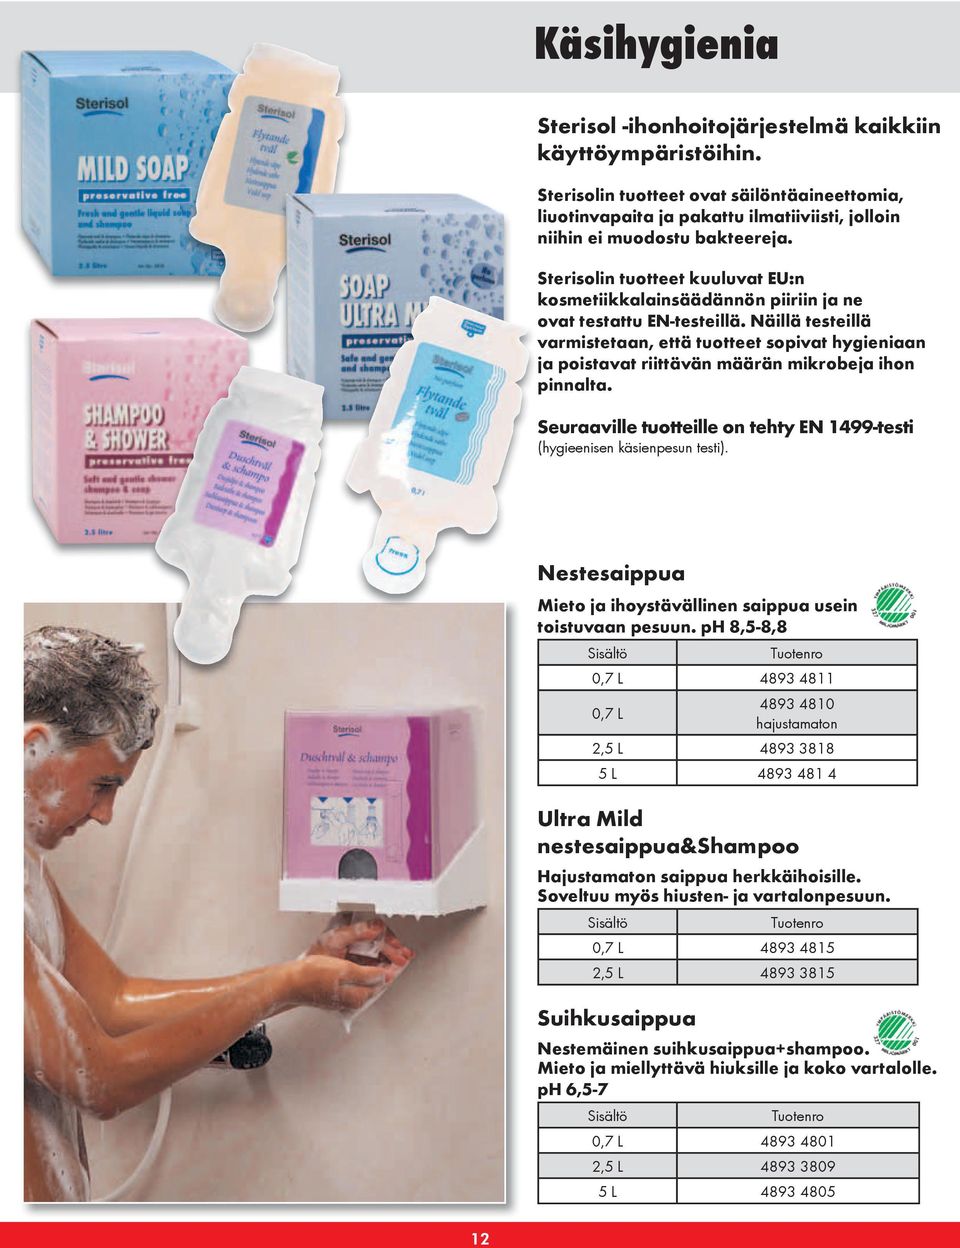 Näillä testeillä varmistetaan, että tuotteet sopivat hygieniaan ja poistavat riittävän määrän mikrobeja ihon pinnalta. Seuraaville tuotteille on tehty EN 1499-testi (hygieenisen käsienpesun testi).